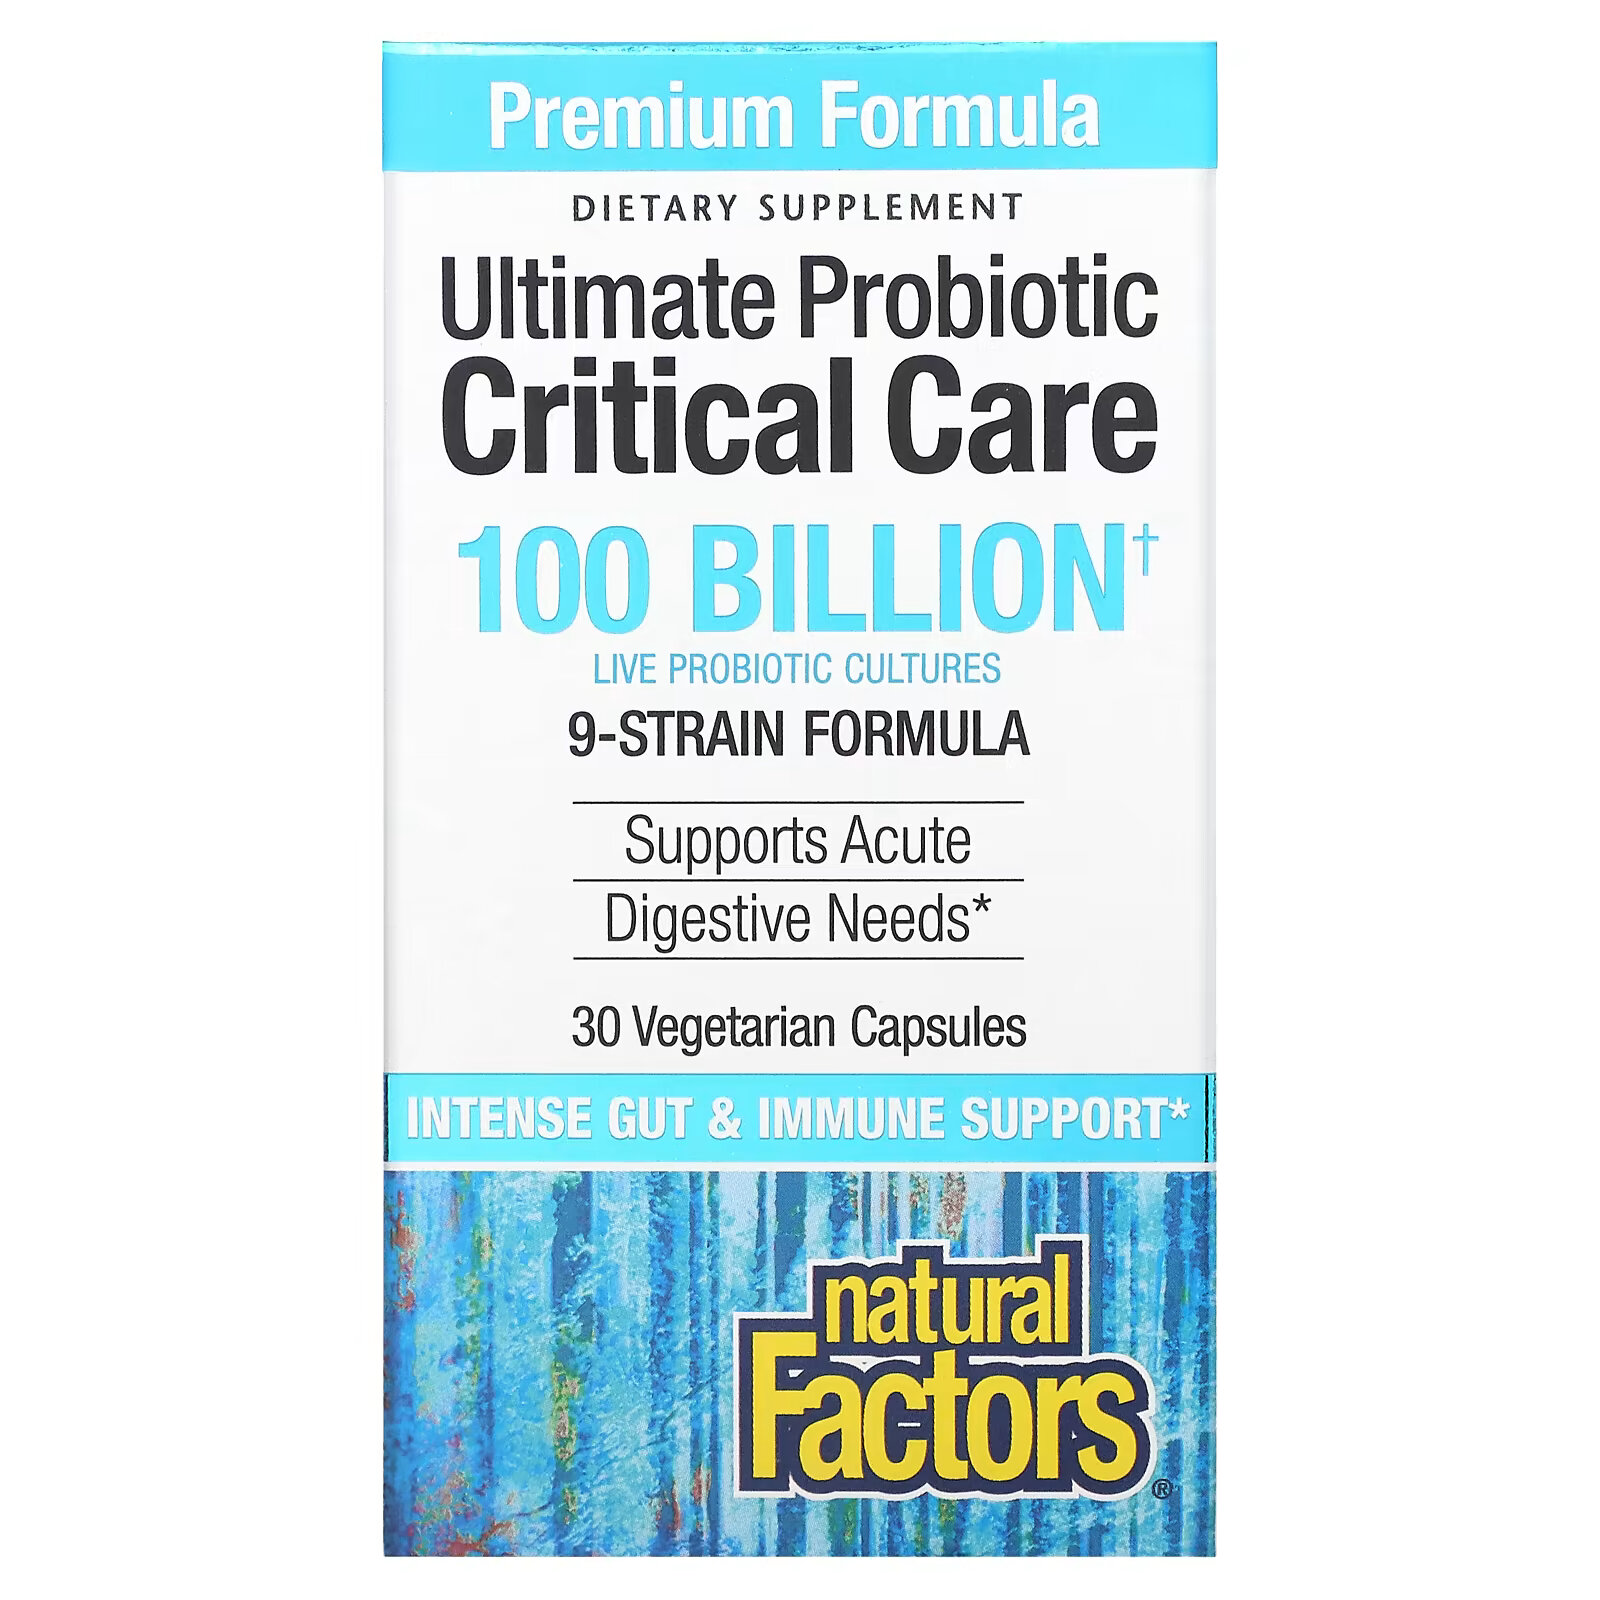 Natural Factors, Ultimate Probiotic Critical Care, пробиотики для лечения критических состояний, 100 миллиардов КОЕ, 30 вегетарианских капсул natural factors ultimate probiotic critical care 55 миллиардов кое 30 вегетарианских капсул